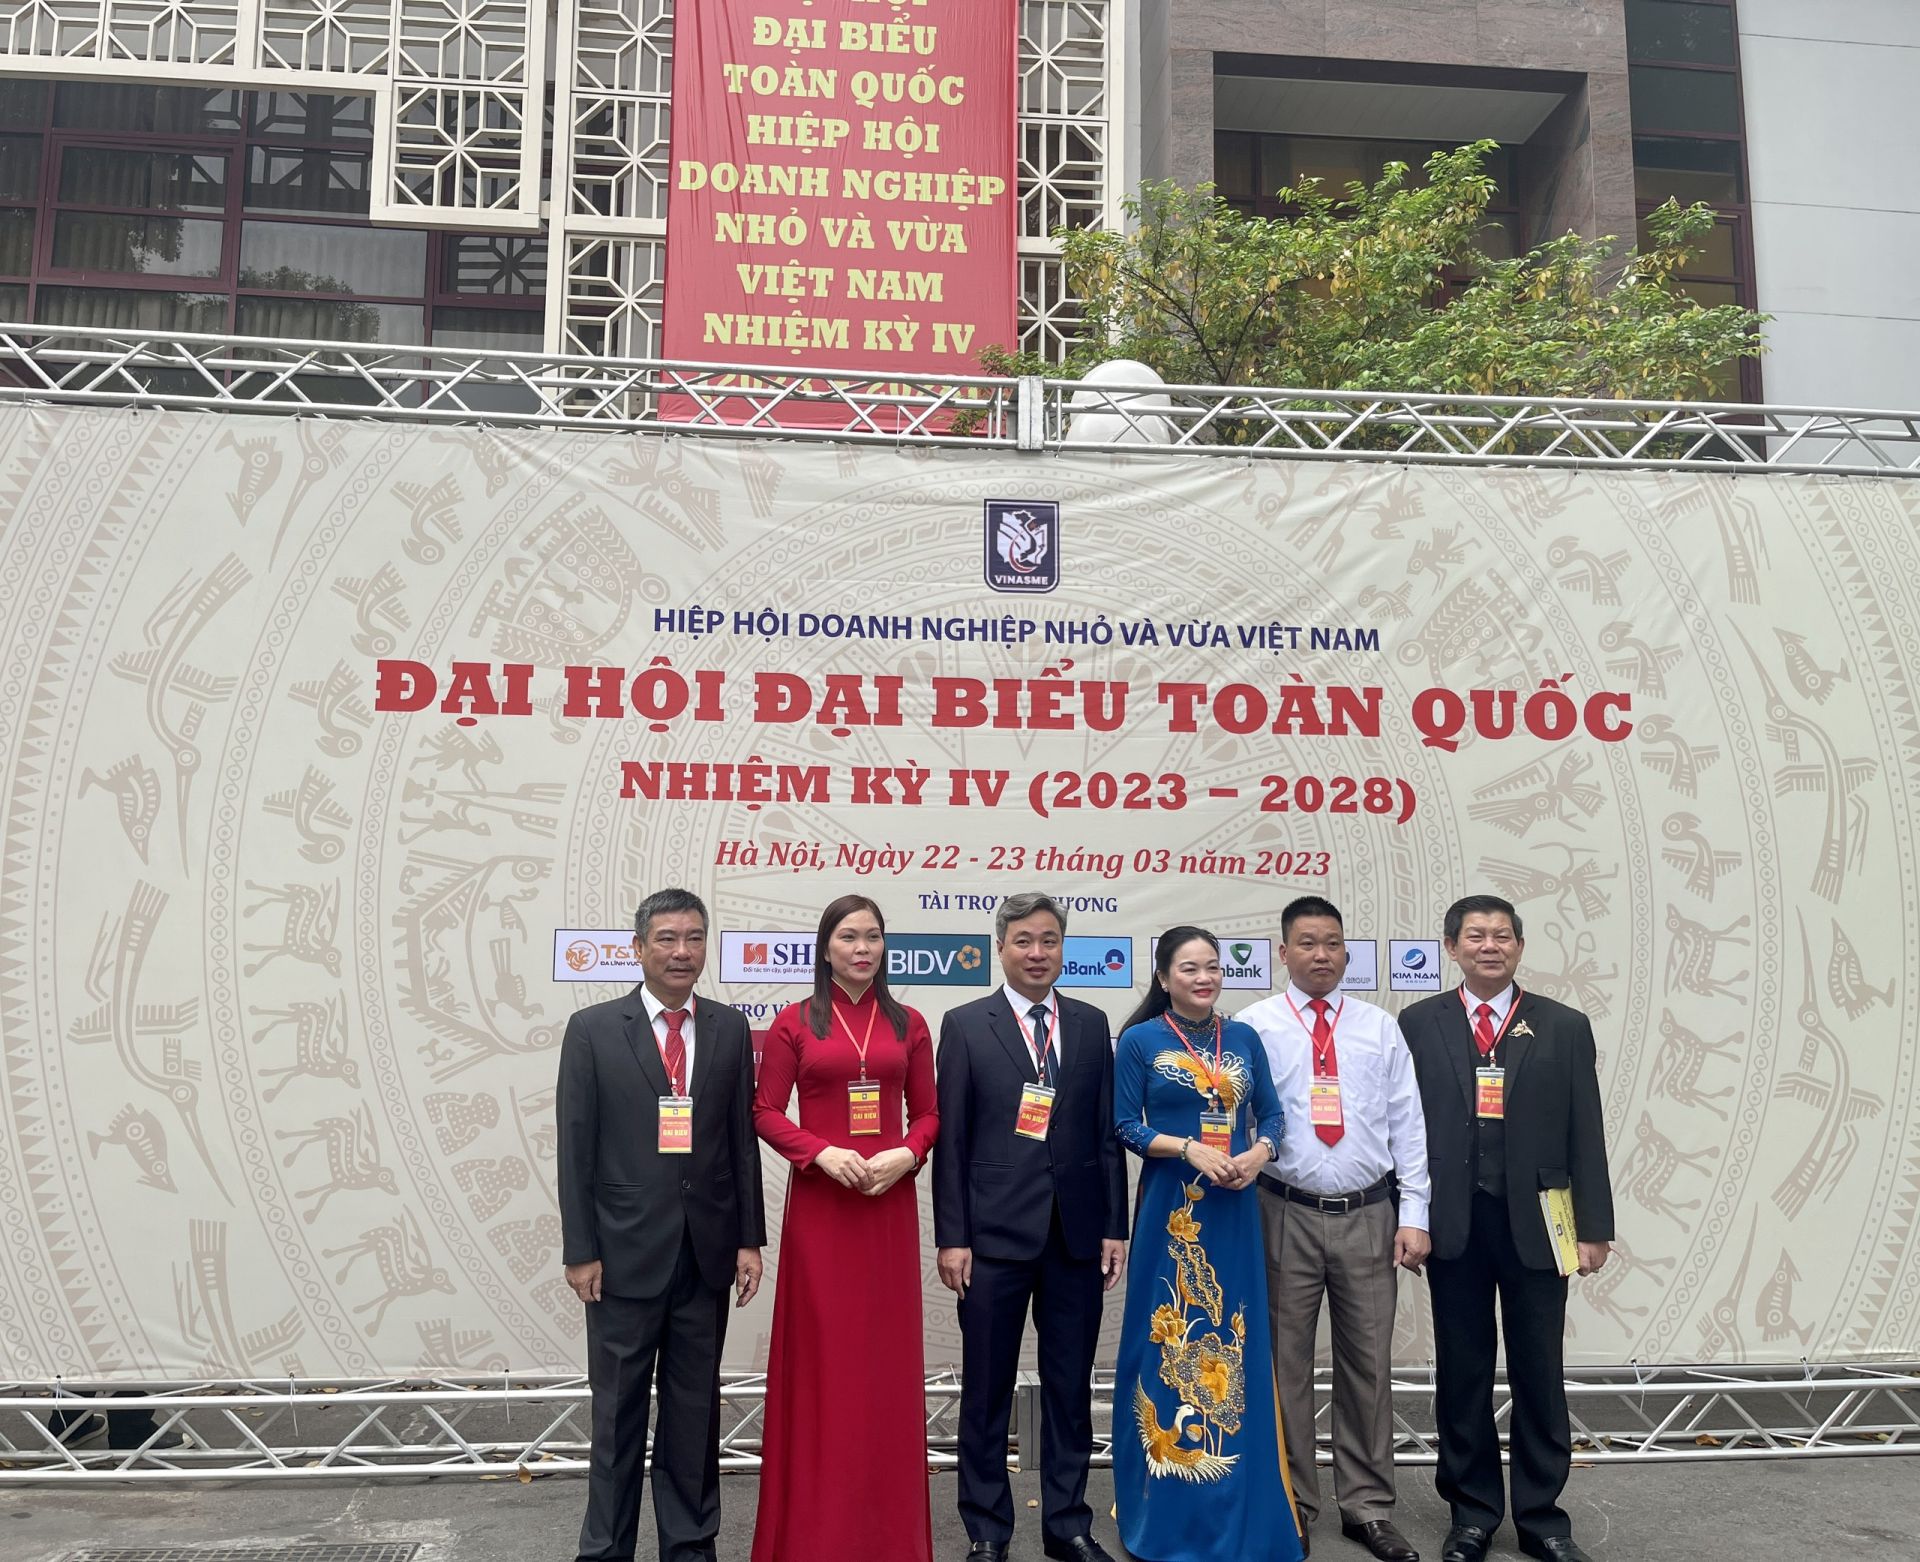 Các Đại biểu chụp ảnh check in tại địa điểm diễn ra Đại hội Đại biểu toàn quốc Hiệp hội Doanh nghiệp nhỏ và vừa Việt Nam (VINASME) lần thứ IV tại Nhà khách Quốc tế số 11 Lê Hồng Phong.